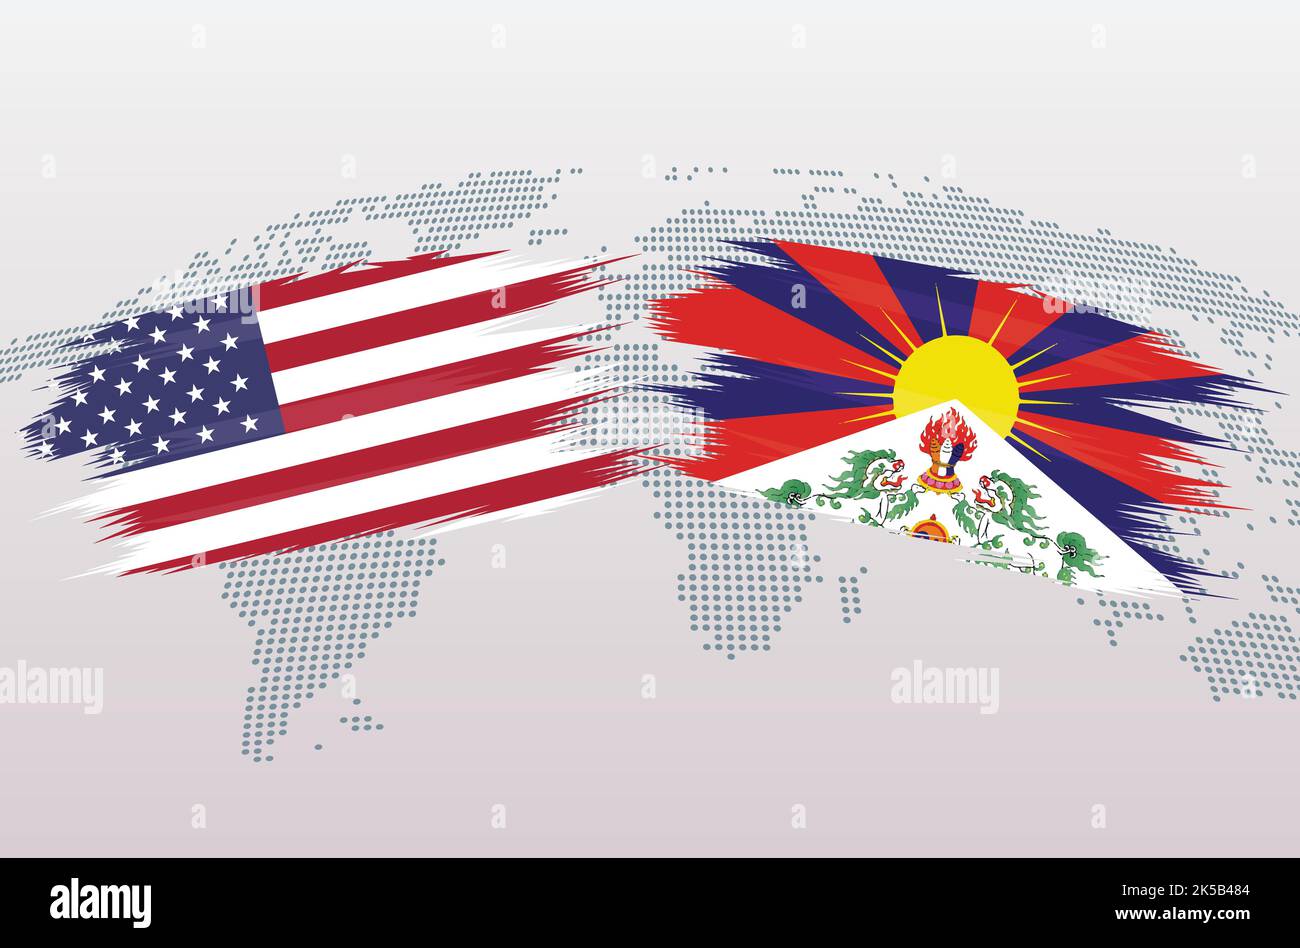 Bandiere USA vs Tibet. Bandiere degli Stati Uniti d'America VS Tibet, isolate su sfondo grigio della mappa del mondo. Illustrazione vettoriale. Illustrazione Vettoriale